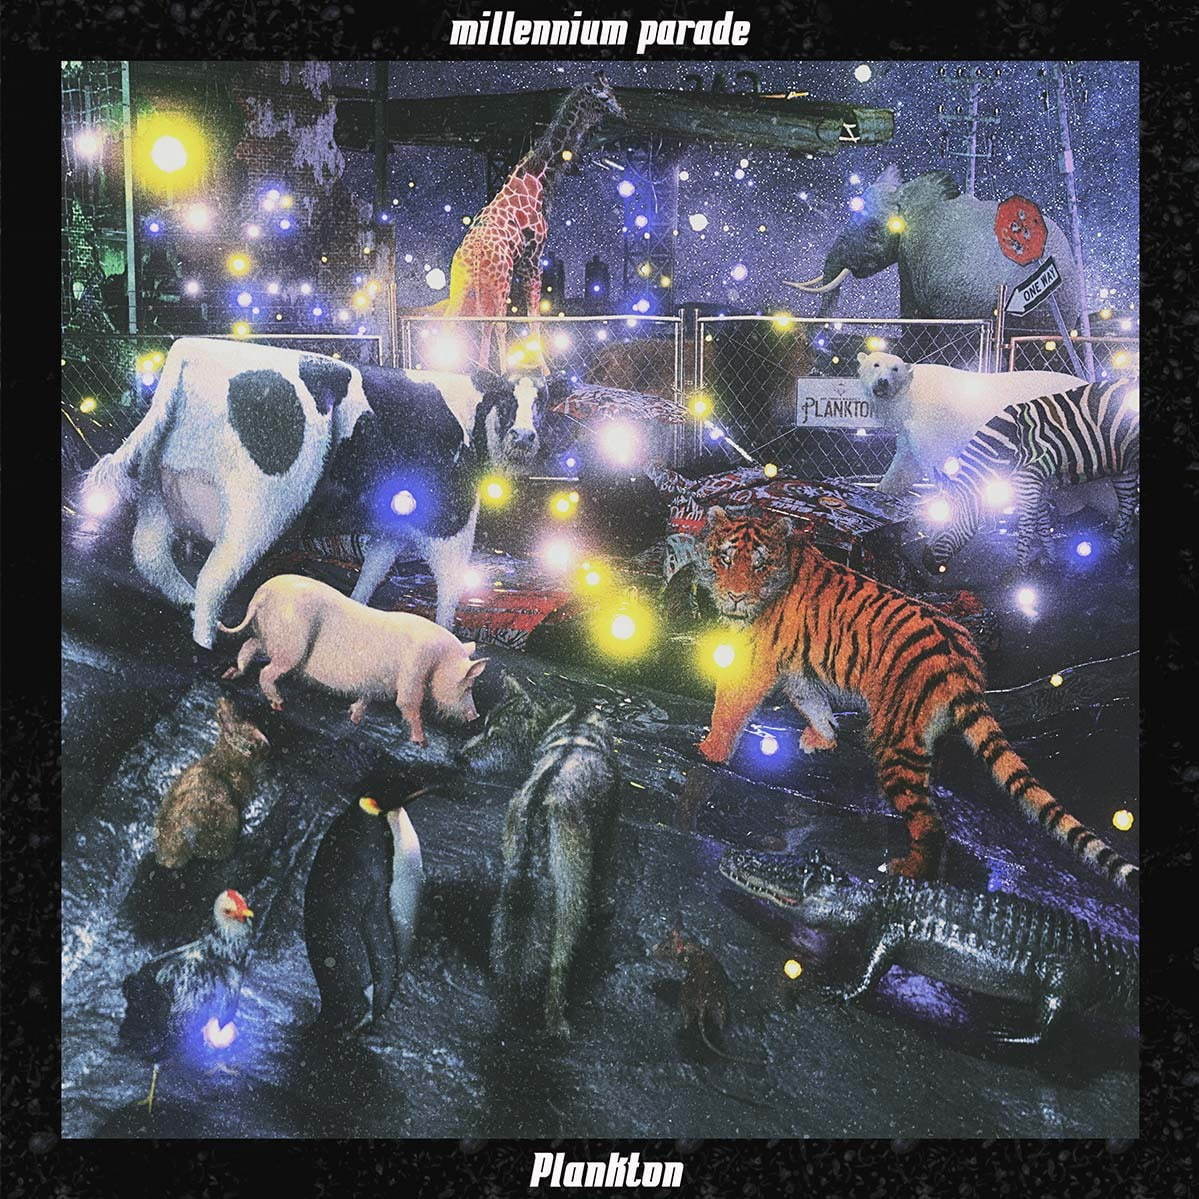 millennium parade (ミレニアム・パレード)2ndシングル『Plankton』ジャケット